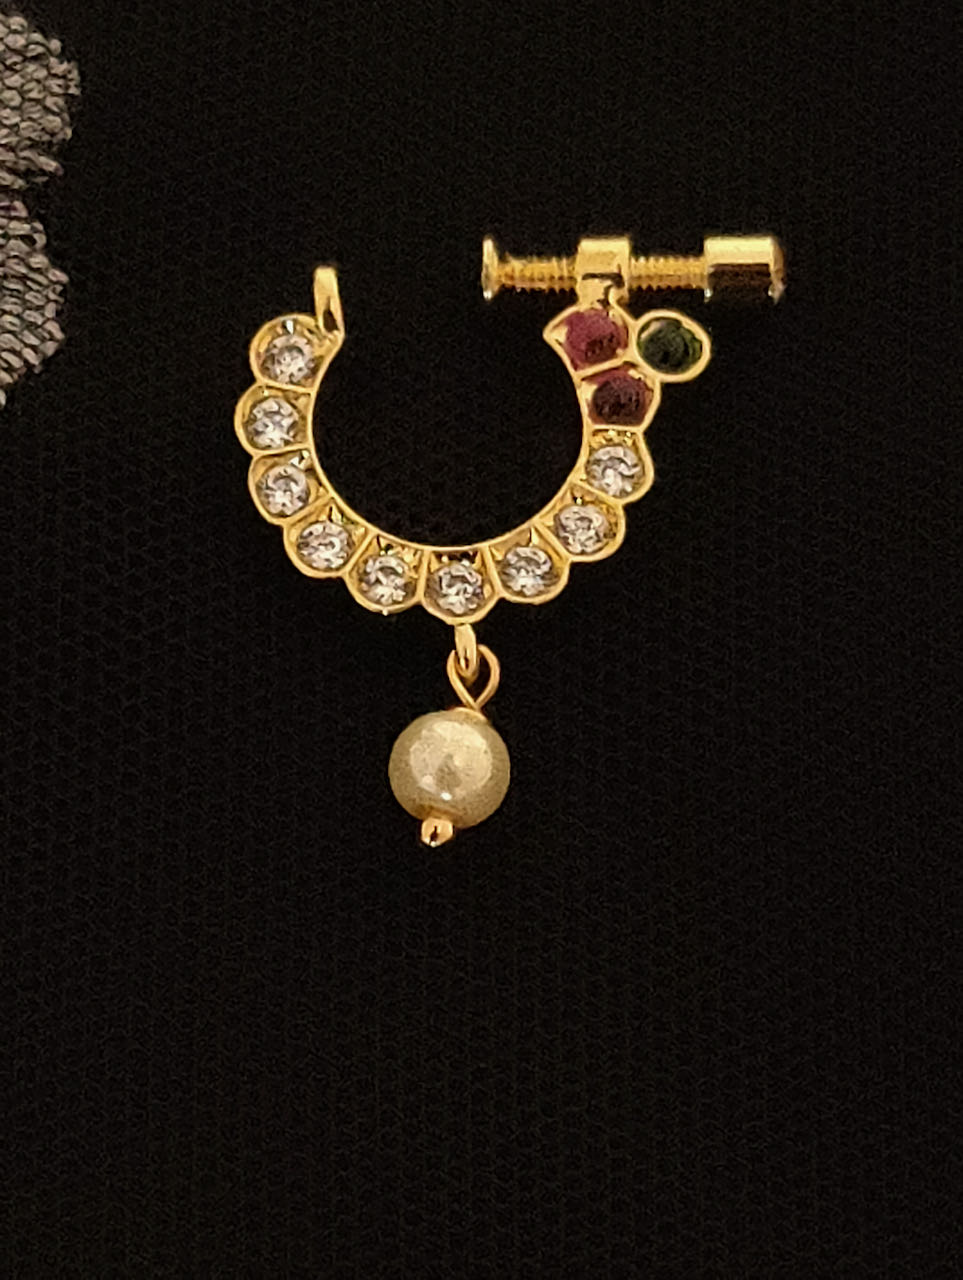 Mejuri | Everyday Fine Jewelry | Online Jewelry Shop